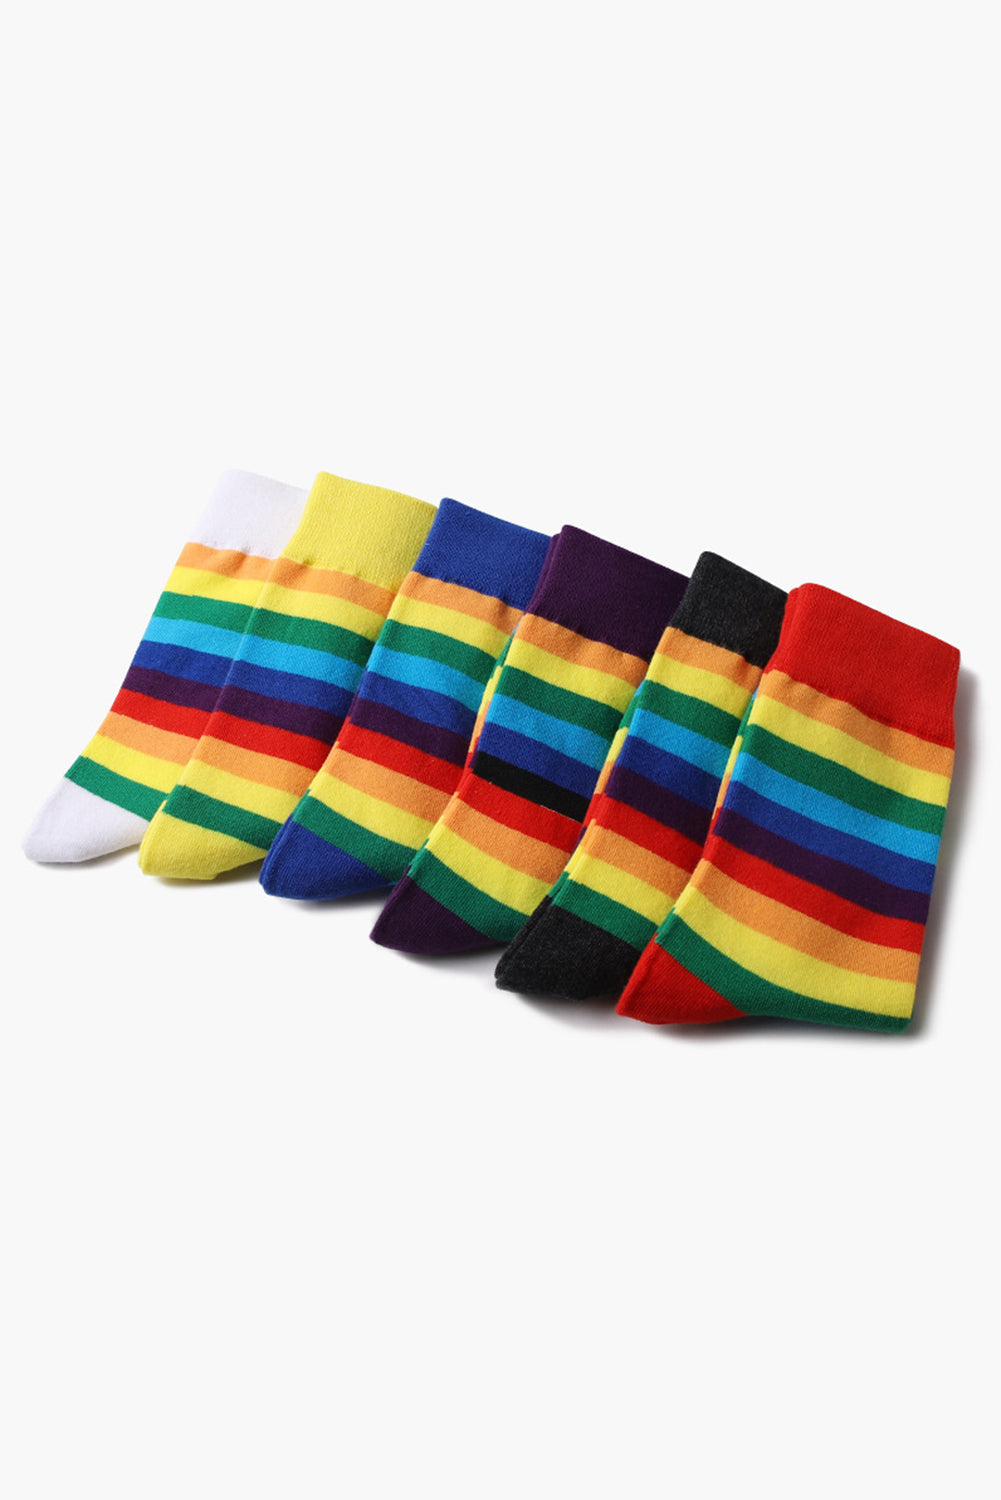 BH041619-2, Black Pride Sport Socks Men Women Rainbow LGBTQ Accessories Socks